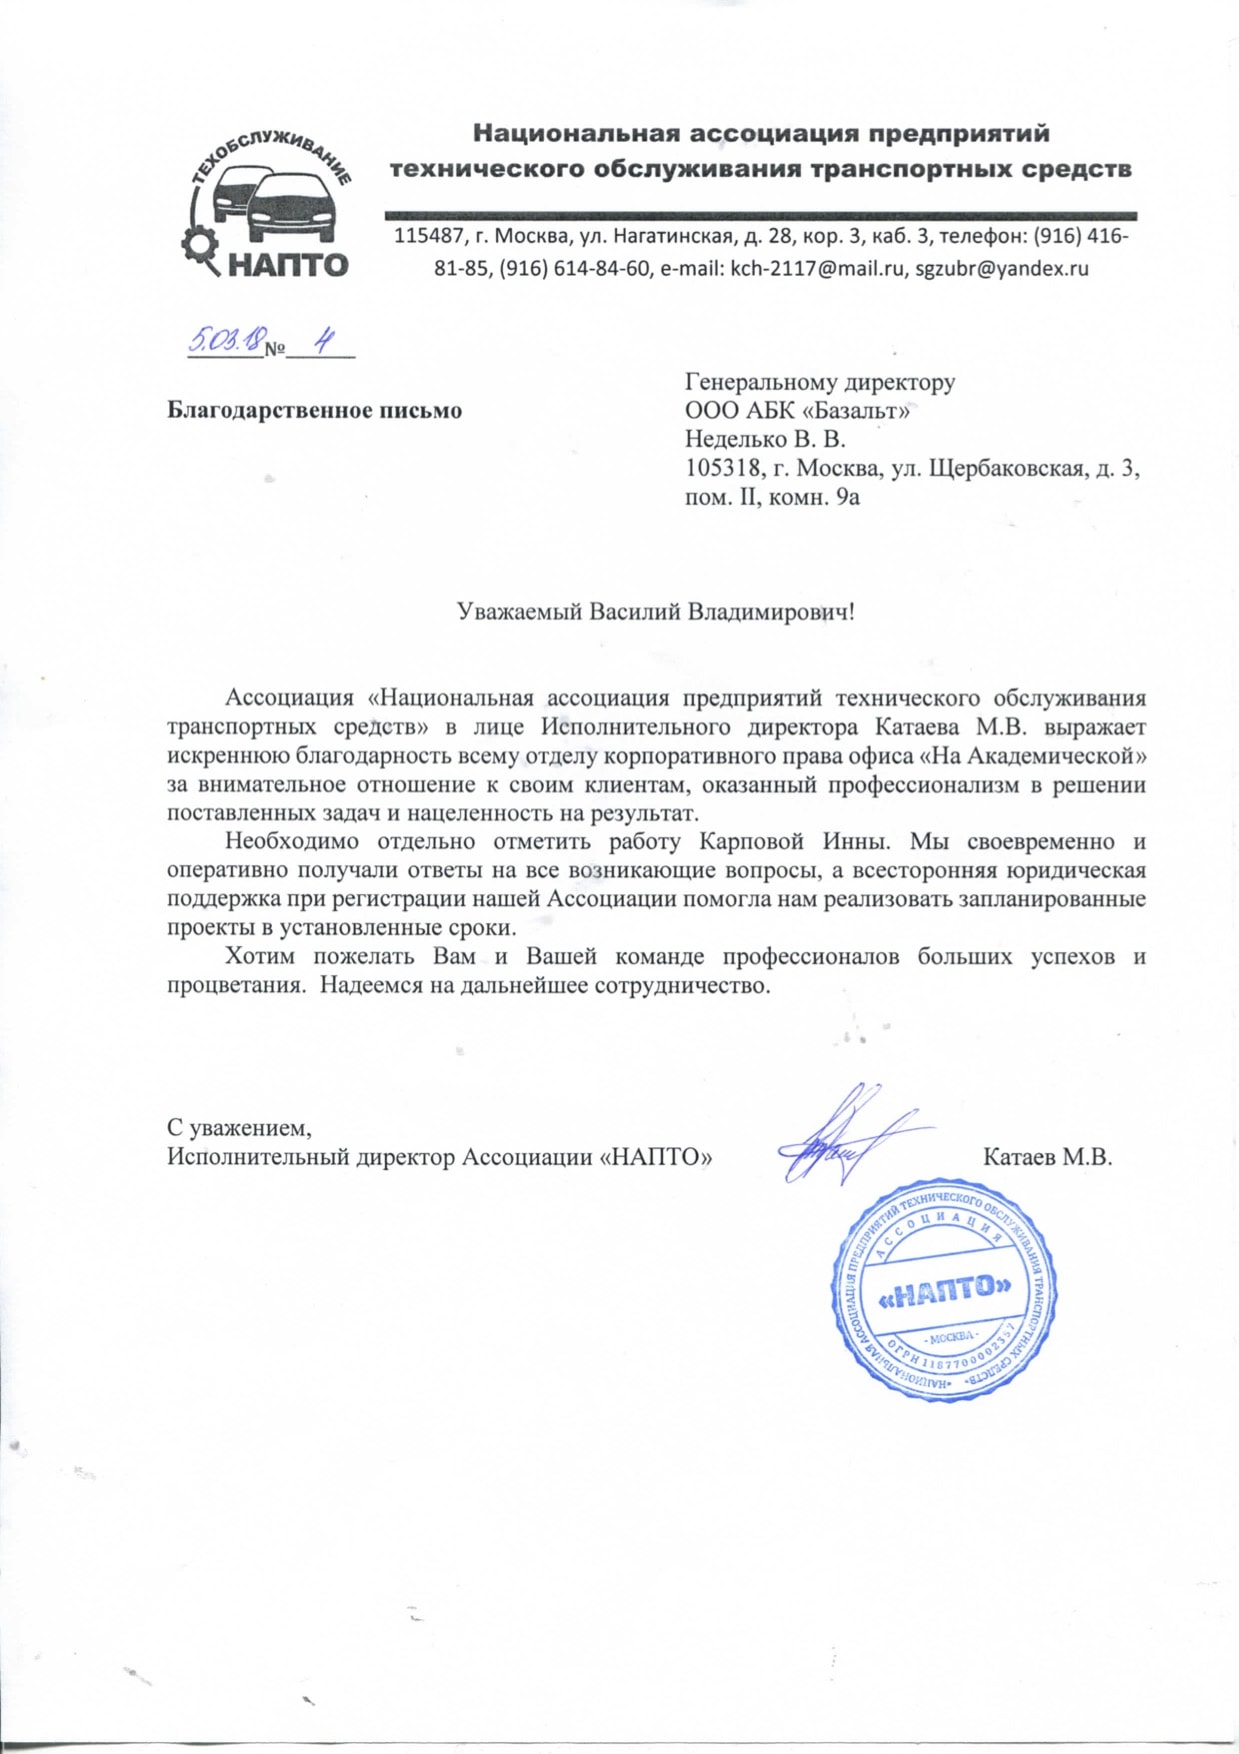 Смена директора стоимость услуги юр адрес в москве недорого